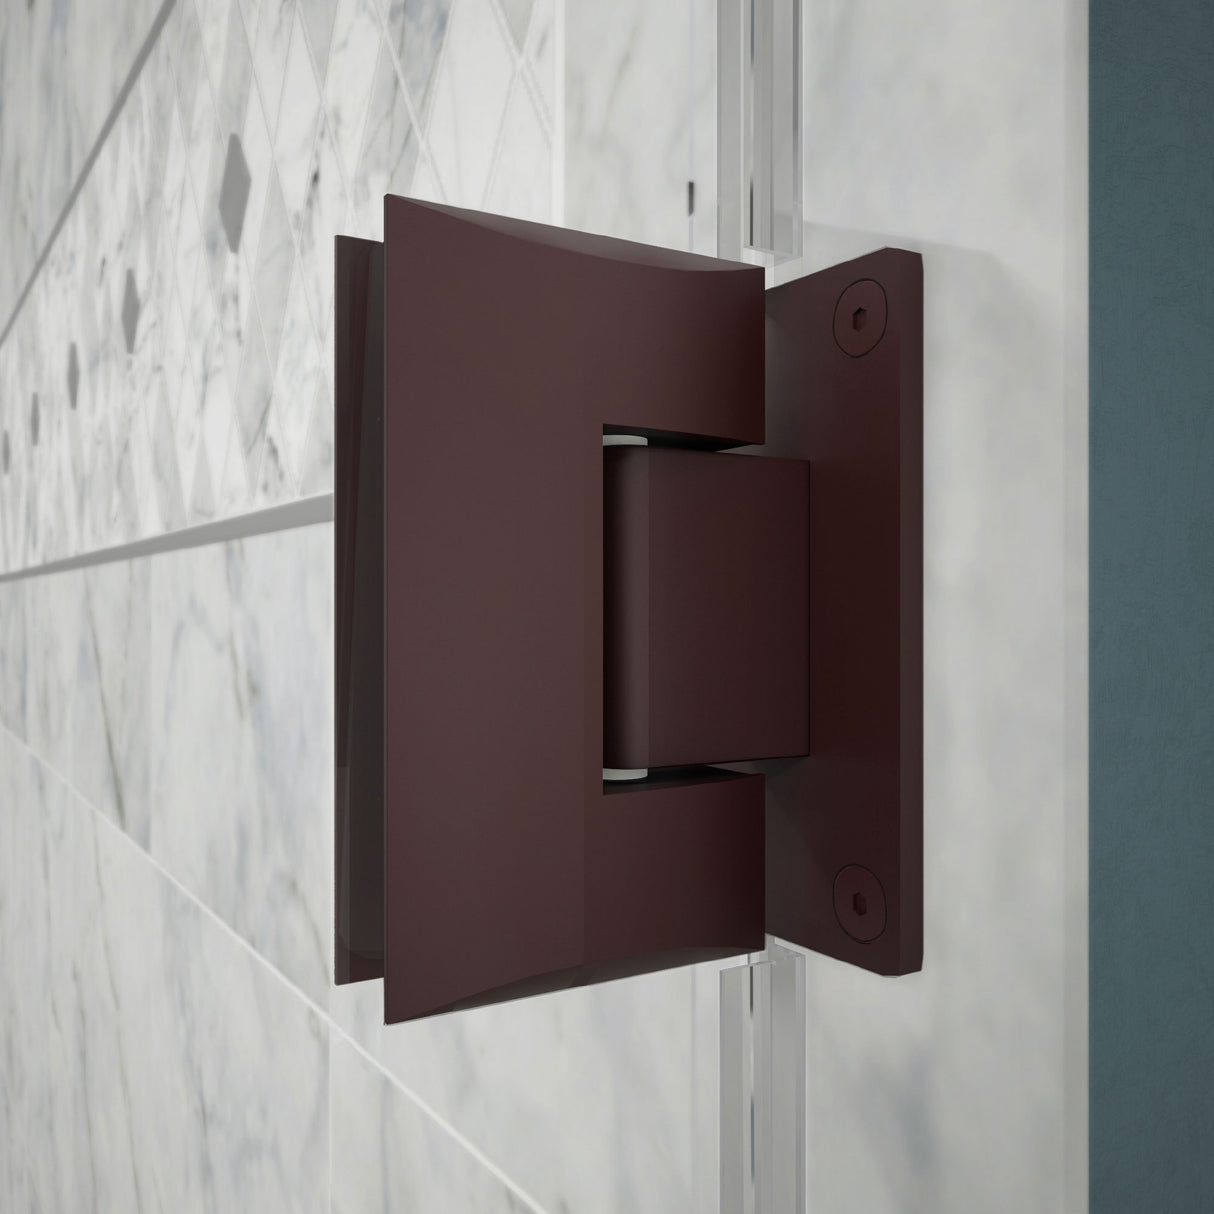 DreamLine Unidoor 39-40 in. W x 72 in. H Frameless Hinged Shower Door with Shelves in Oil Rubbed Bronze